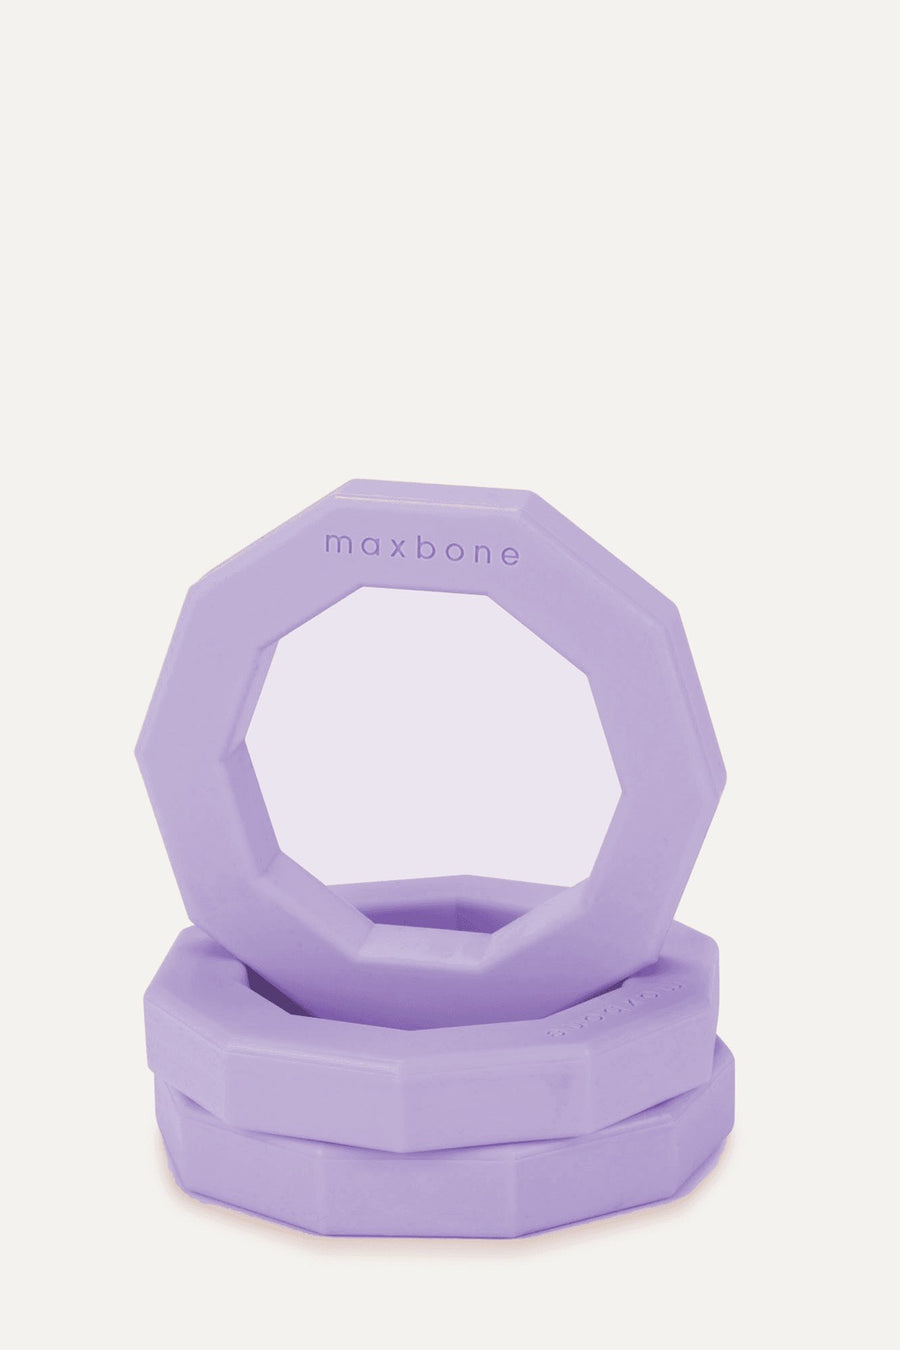 Maxbone Lavender Decagon Dog Chew Toy